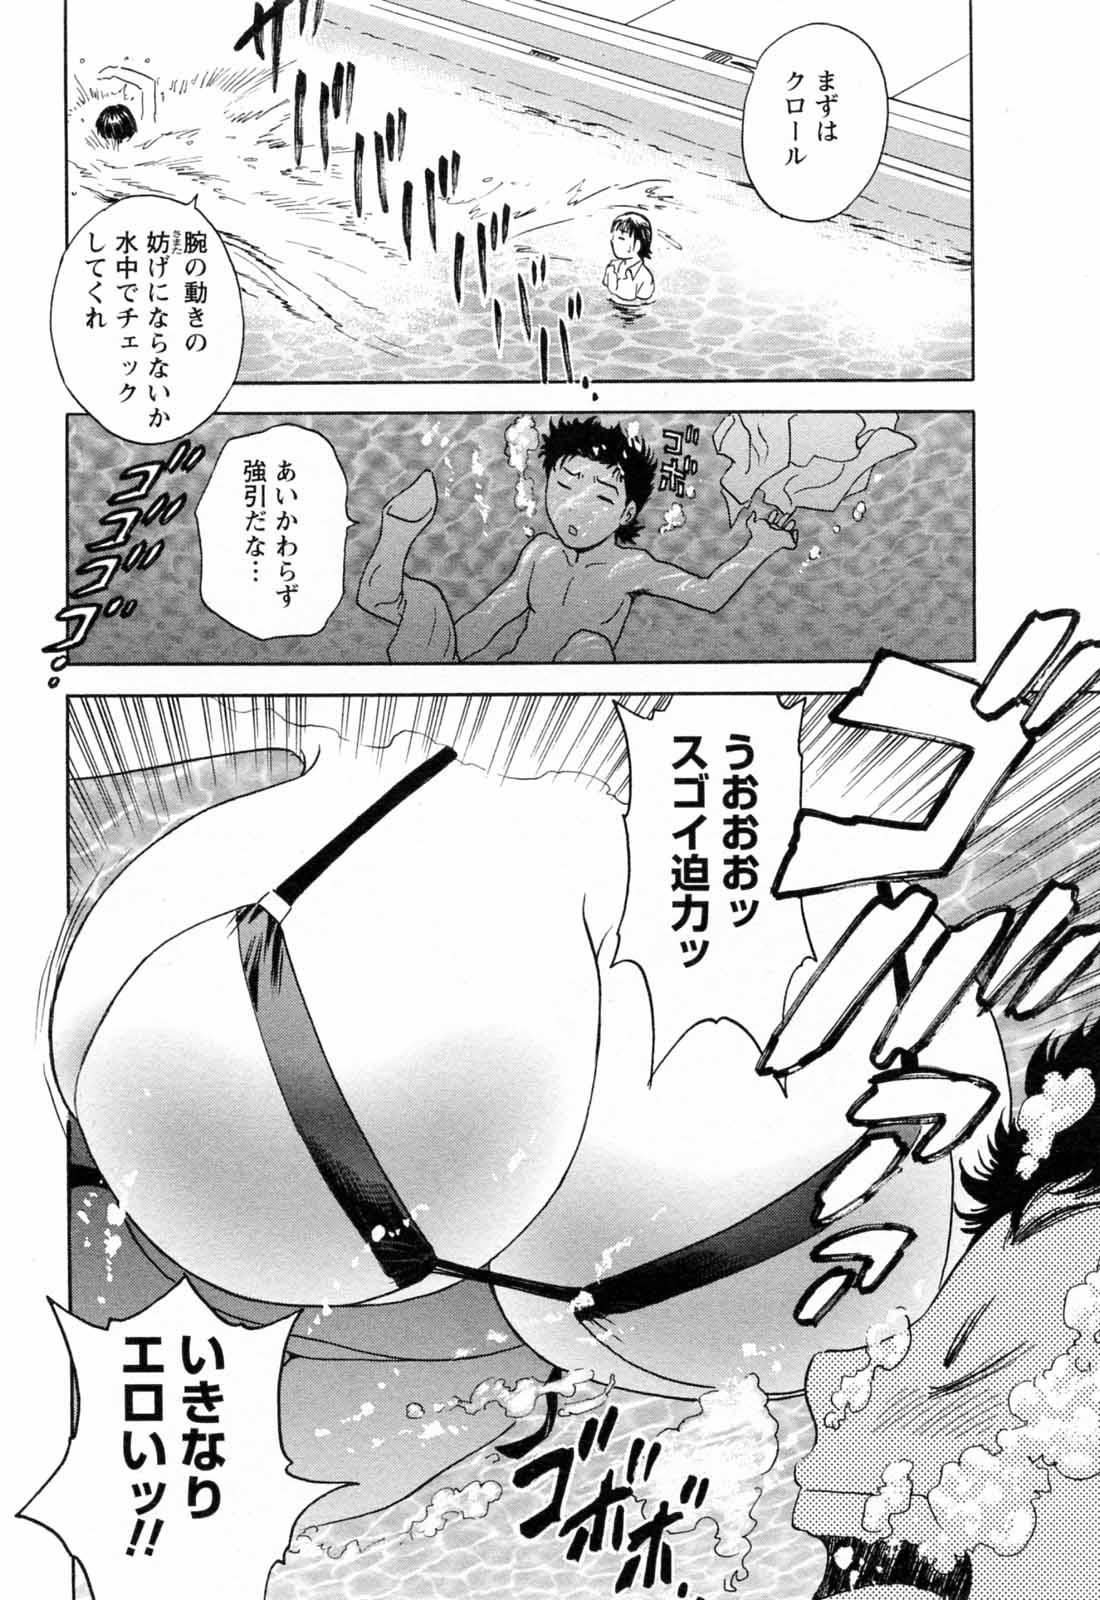 [Hidemaru] Mo-Retsu! Boin Sensei (Boing Boing Teacher) Vol.5 123